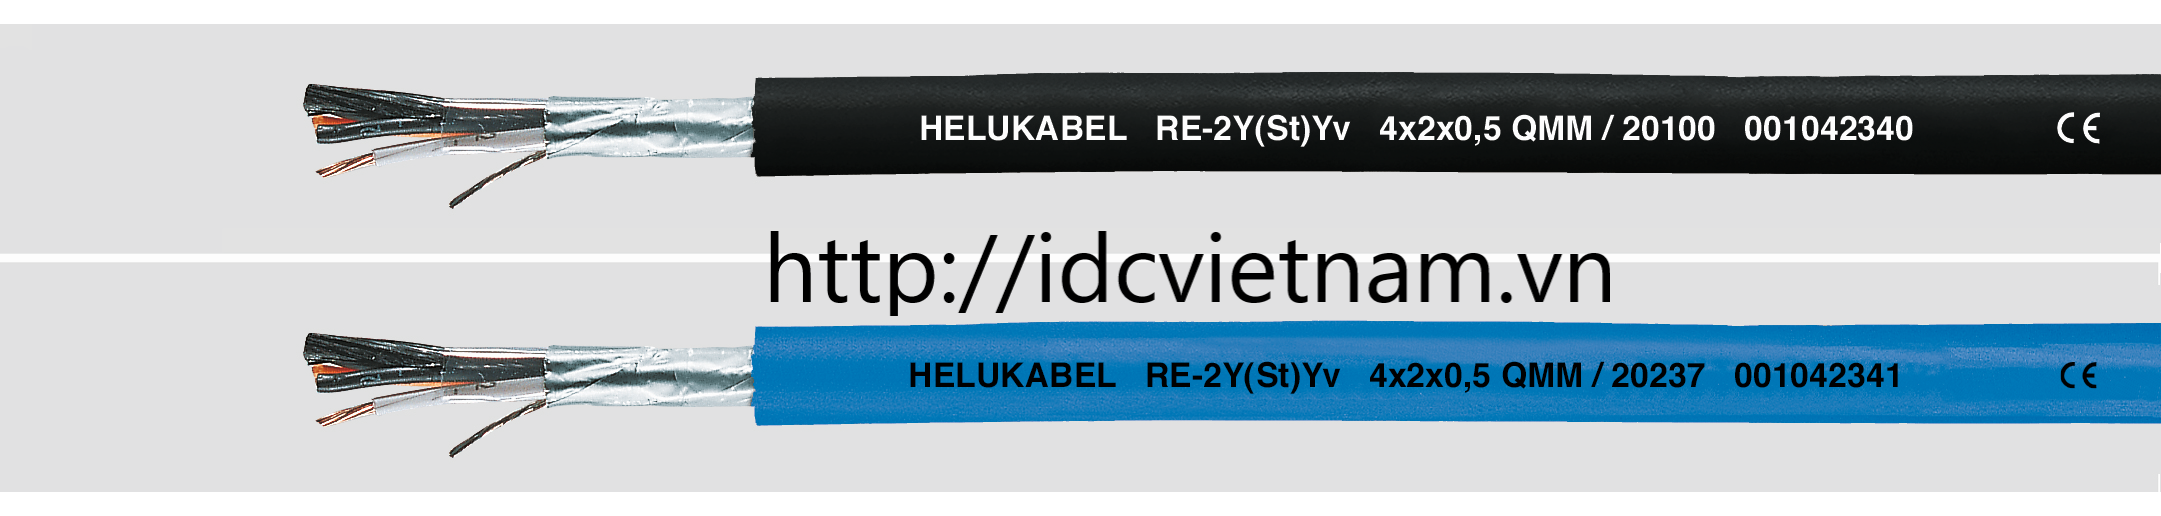 Helukabel RE-2Y(St)Yv 4x2x0,75mm2 BK (20151)